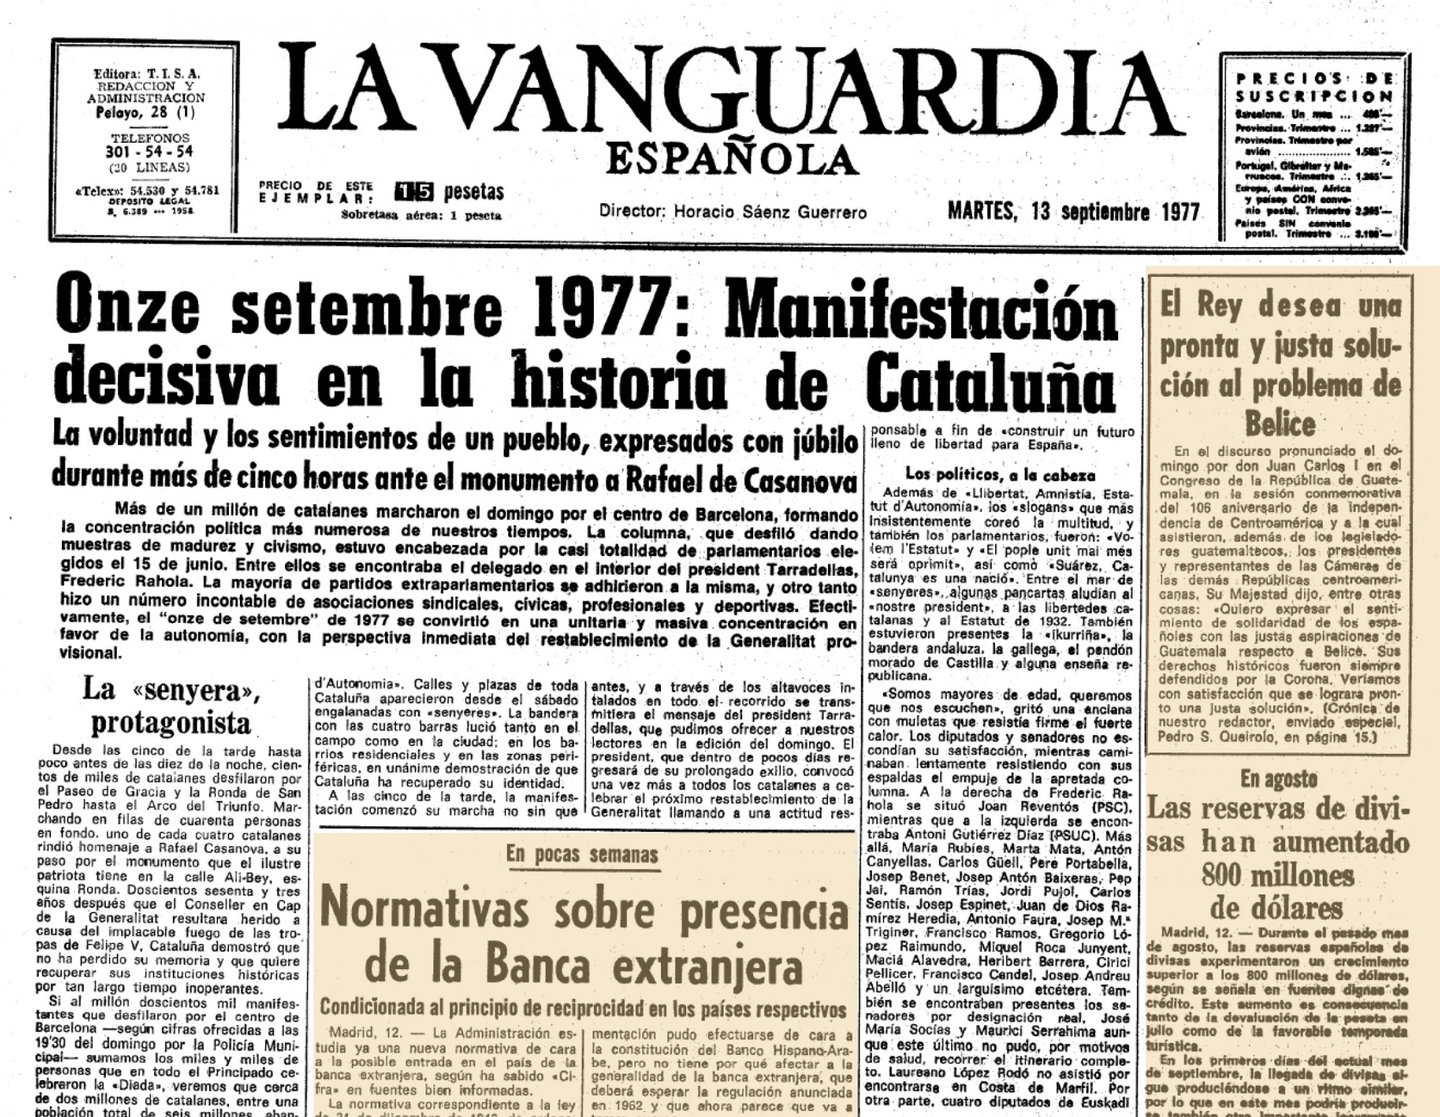 Em 15 de junho de 1977 celebraram-se na Espanha as primeiras eleiÃ§Ãµes legislativas democrÃ¡ticas apÃ³s a proclamaÃ§Ã£o de Juan Carlos I como rei da Espanha. Os deputados e senadores eleitos pela Catalunha pertenciam aos partidos que incluÃ­am nos seus programas a reivindicaÃ§Ã£o de um estatuto de autonomia e o restabelecimento da Generalitat. Esta vontade popular foi ratificada na Diada (festa) nacional de 11 de setembro de 1977. Um milhÃ£o de cidadÃ£os desfilaram pacificamente pelo centro de Barcelona, capital da Catalunha, numa das maiores manifestaÃ§Ãµes da histÃ³ria da Europa contemporÃ¢nea.